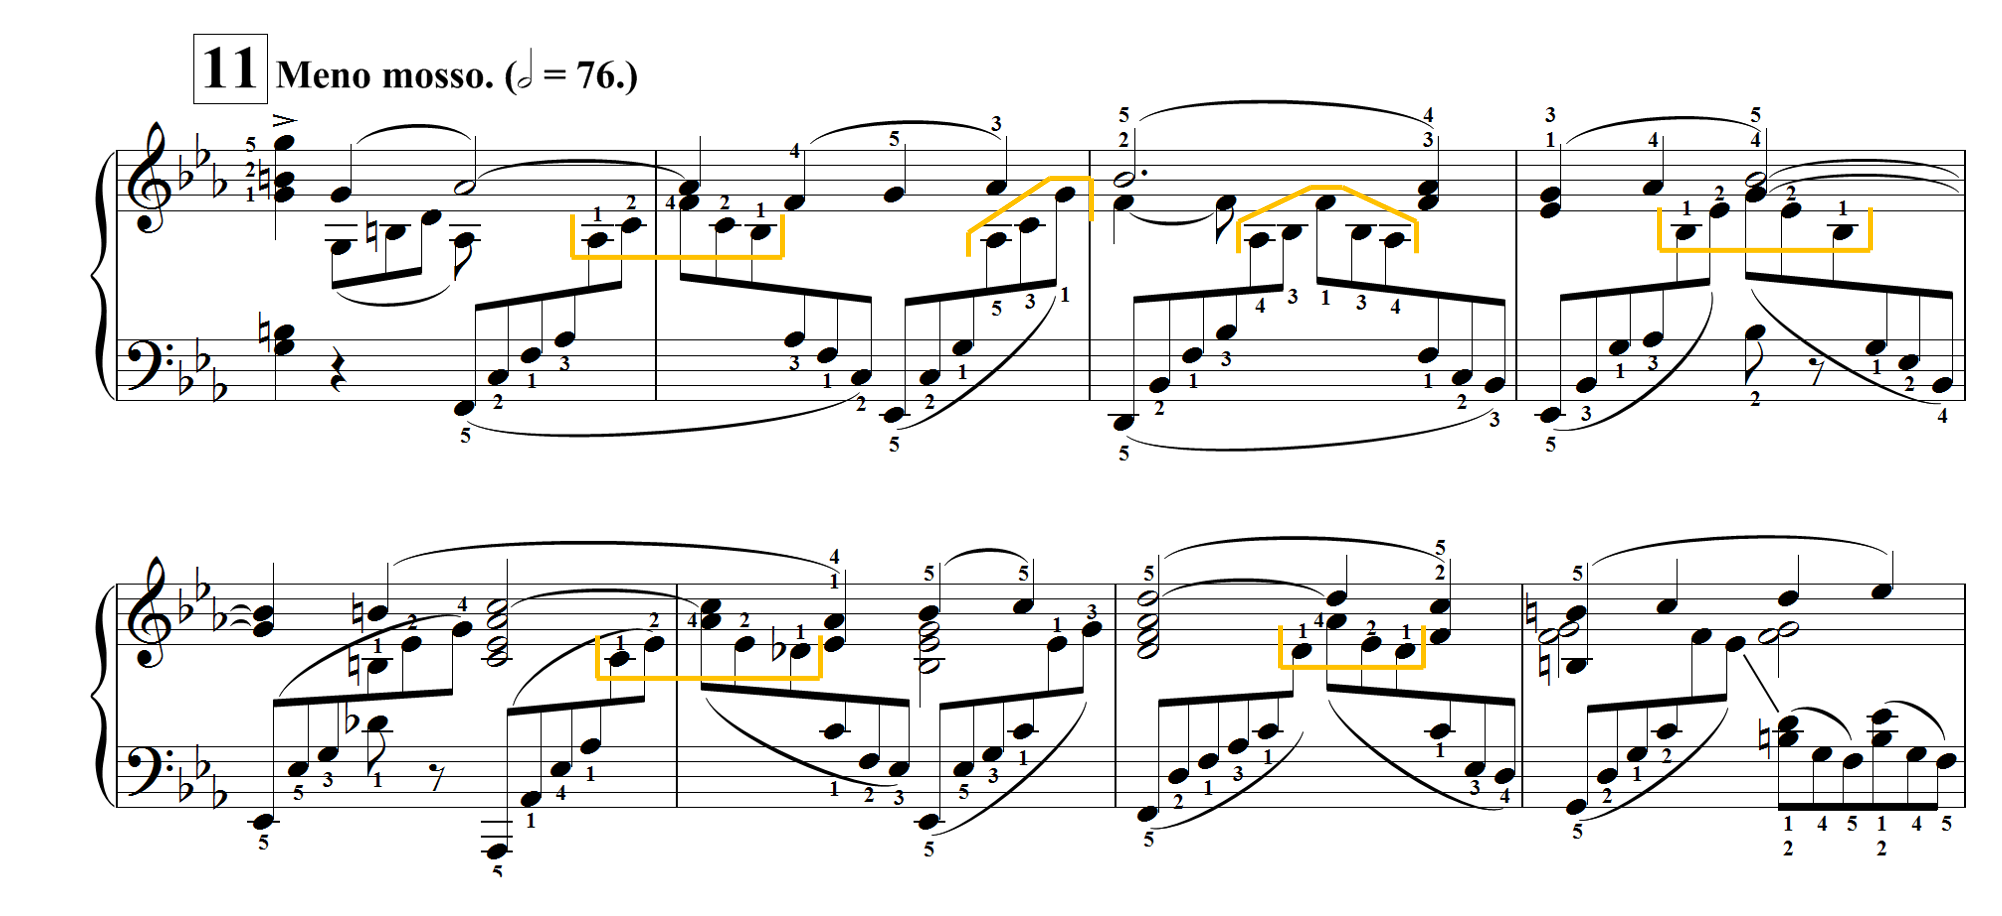 Espera un minuto Hermano personaje Piano fingerings for RACHMANINOFF | Piano Concerto No. 2 in C Minor, Op.  20: I. Rehearsal 11 — Piano Tricks